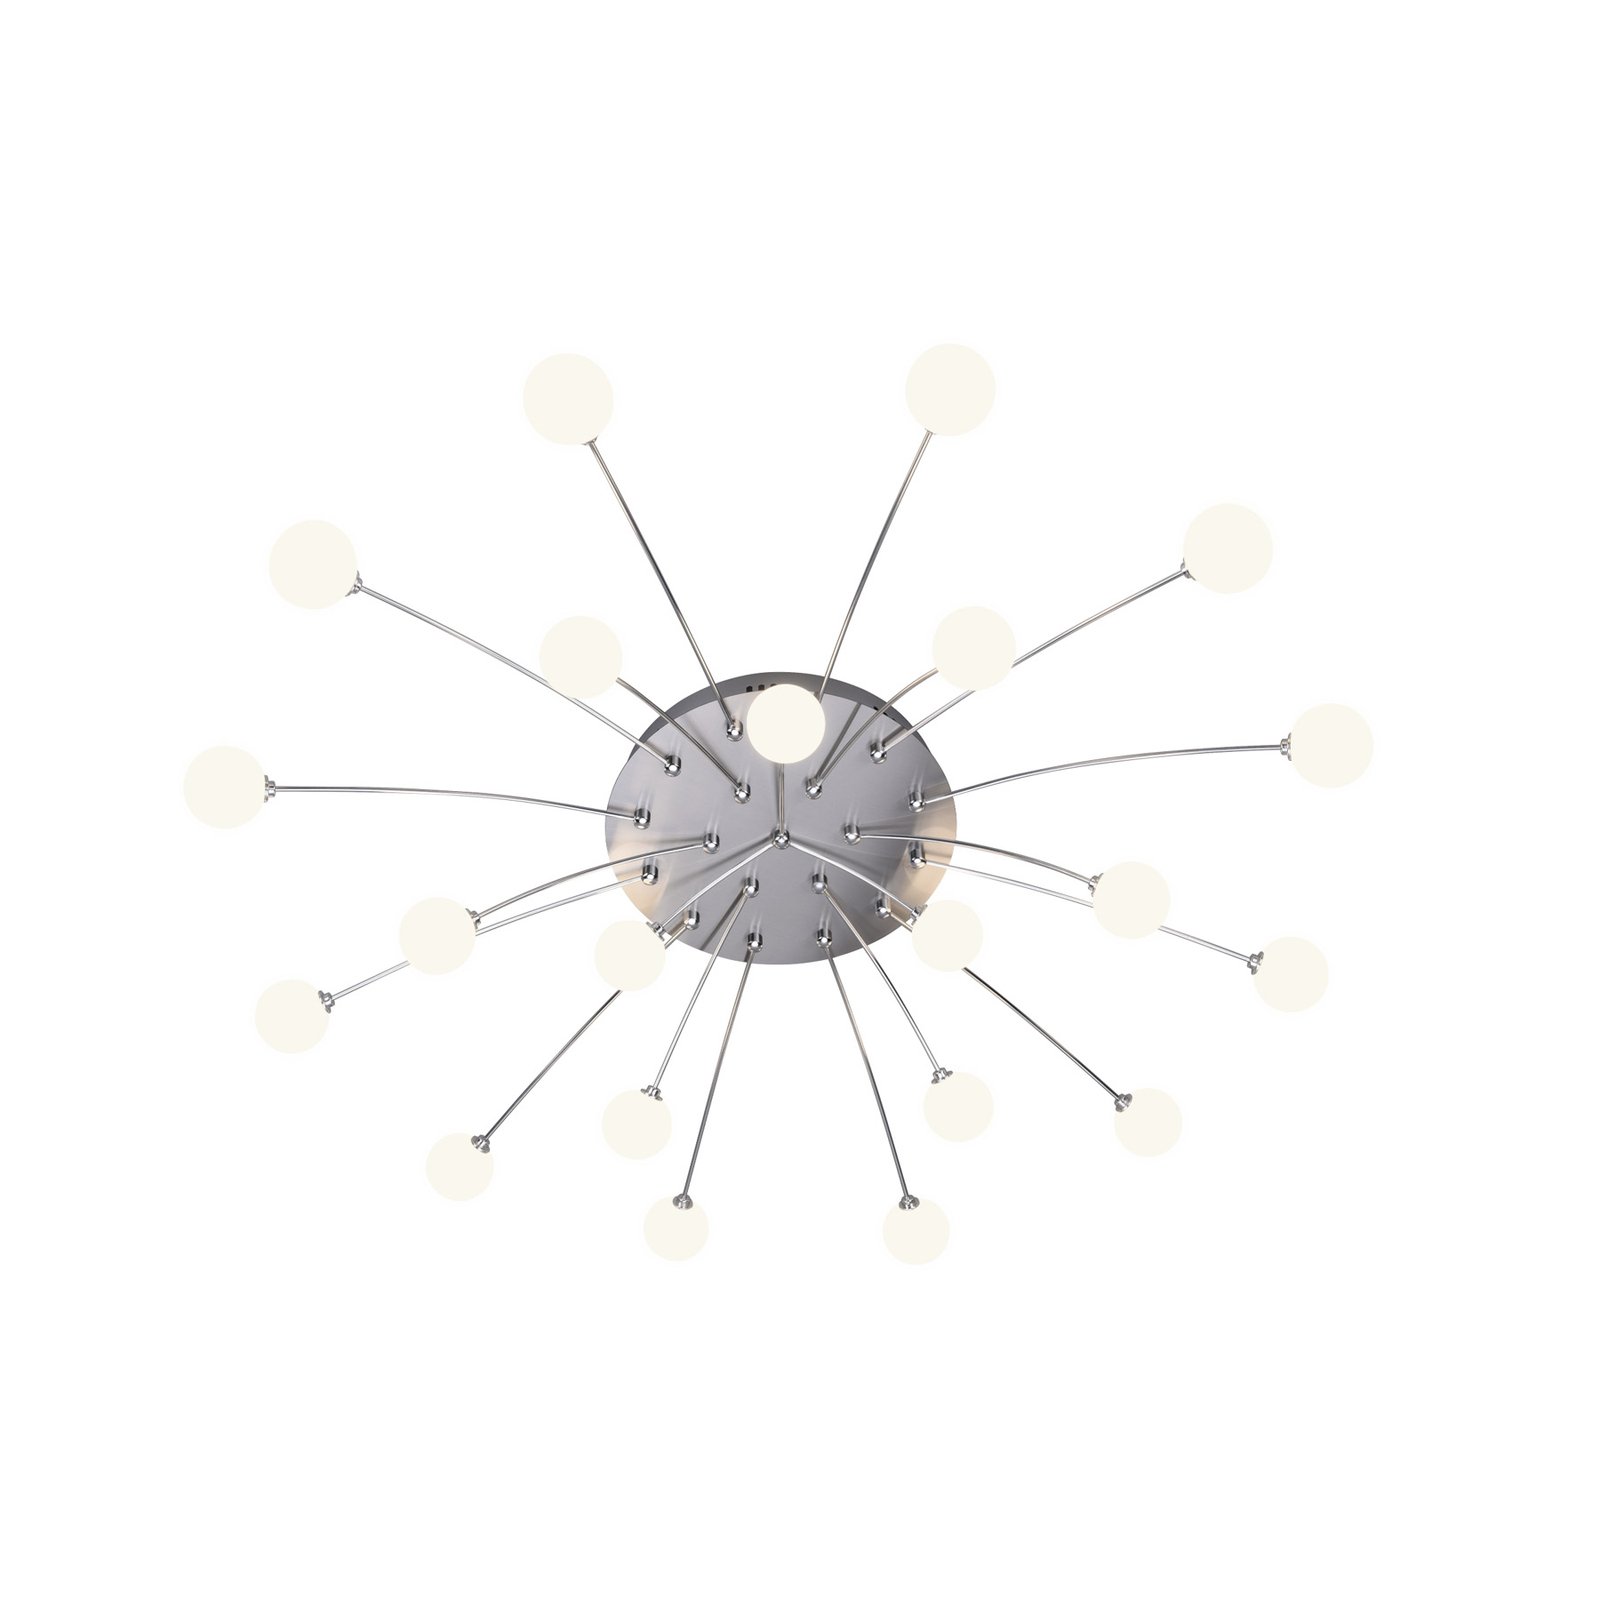 Bullet LED ceiling lamp, 21-light, nickel/white